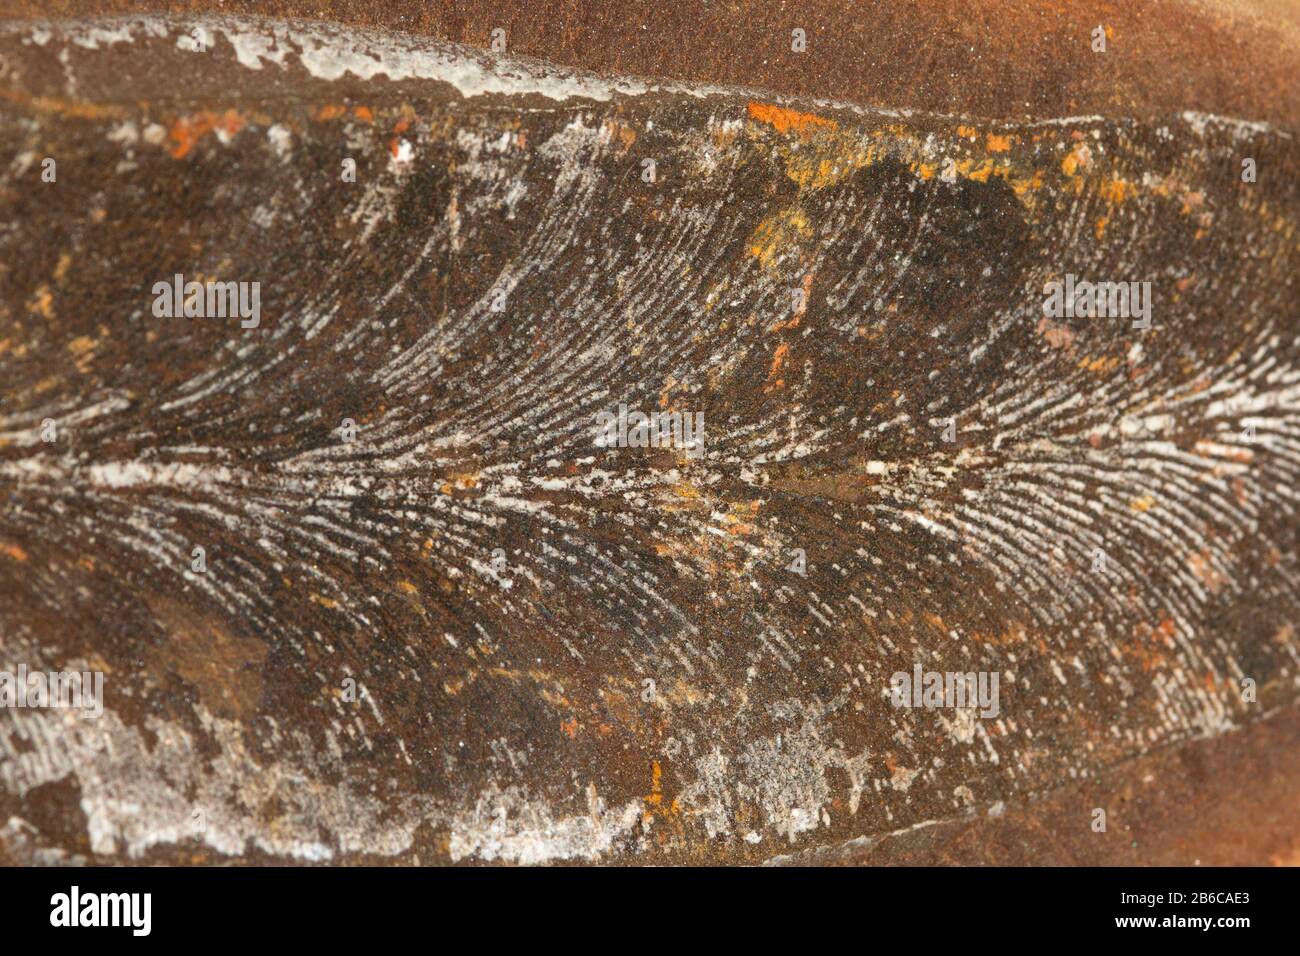 Mazon Creek fossils, Illinois Stock Photo